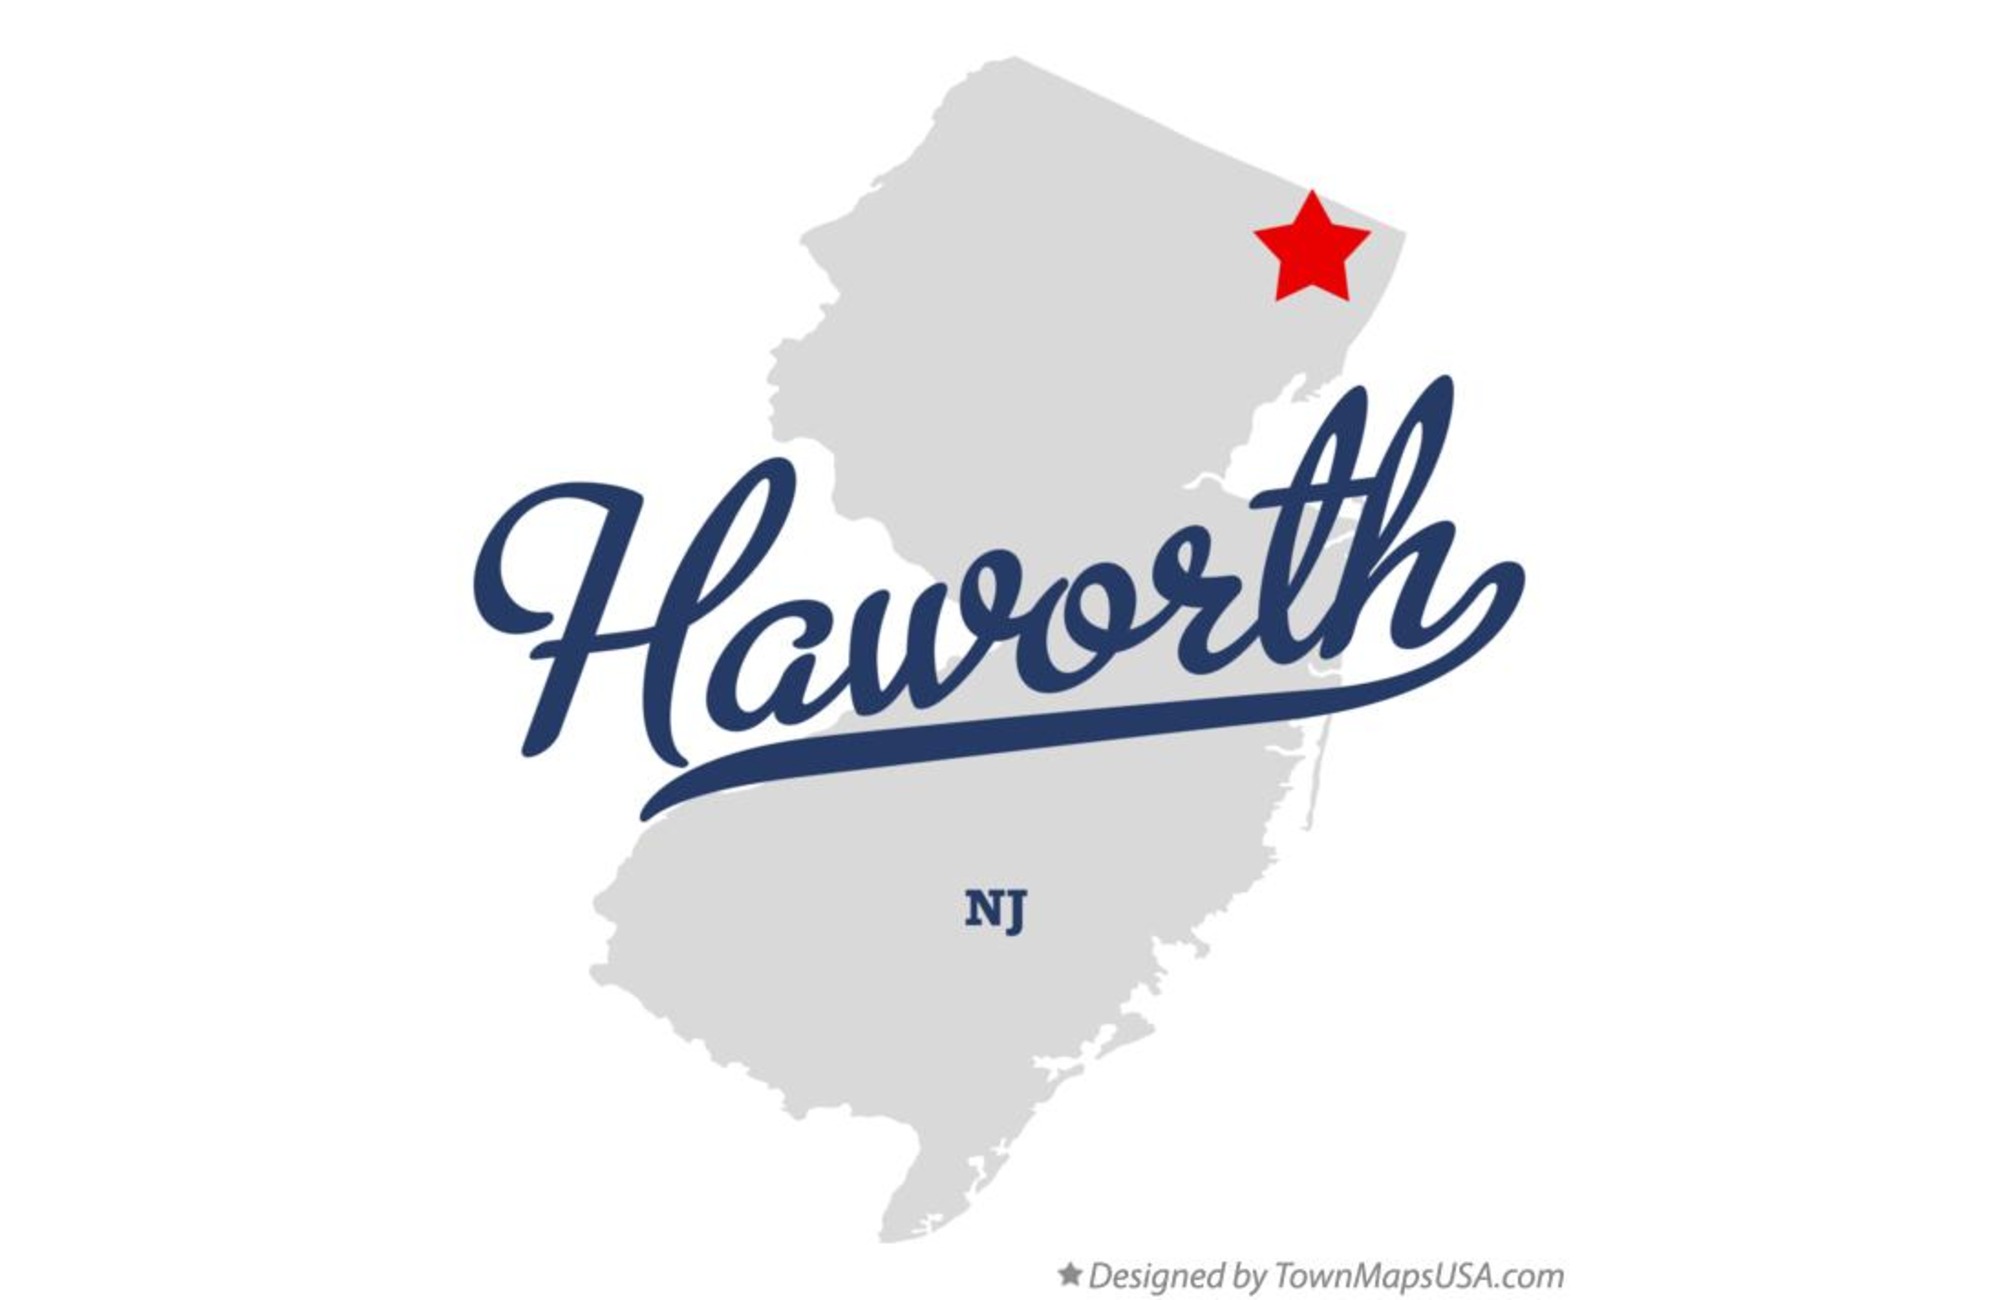 Haworth Movers